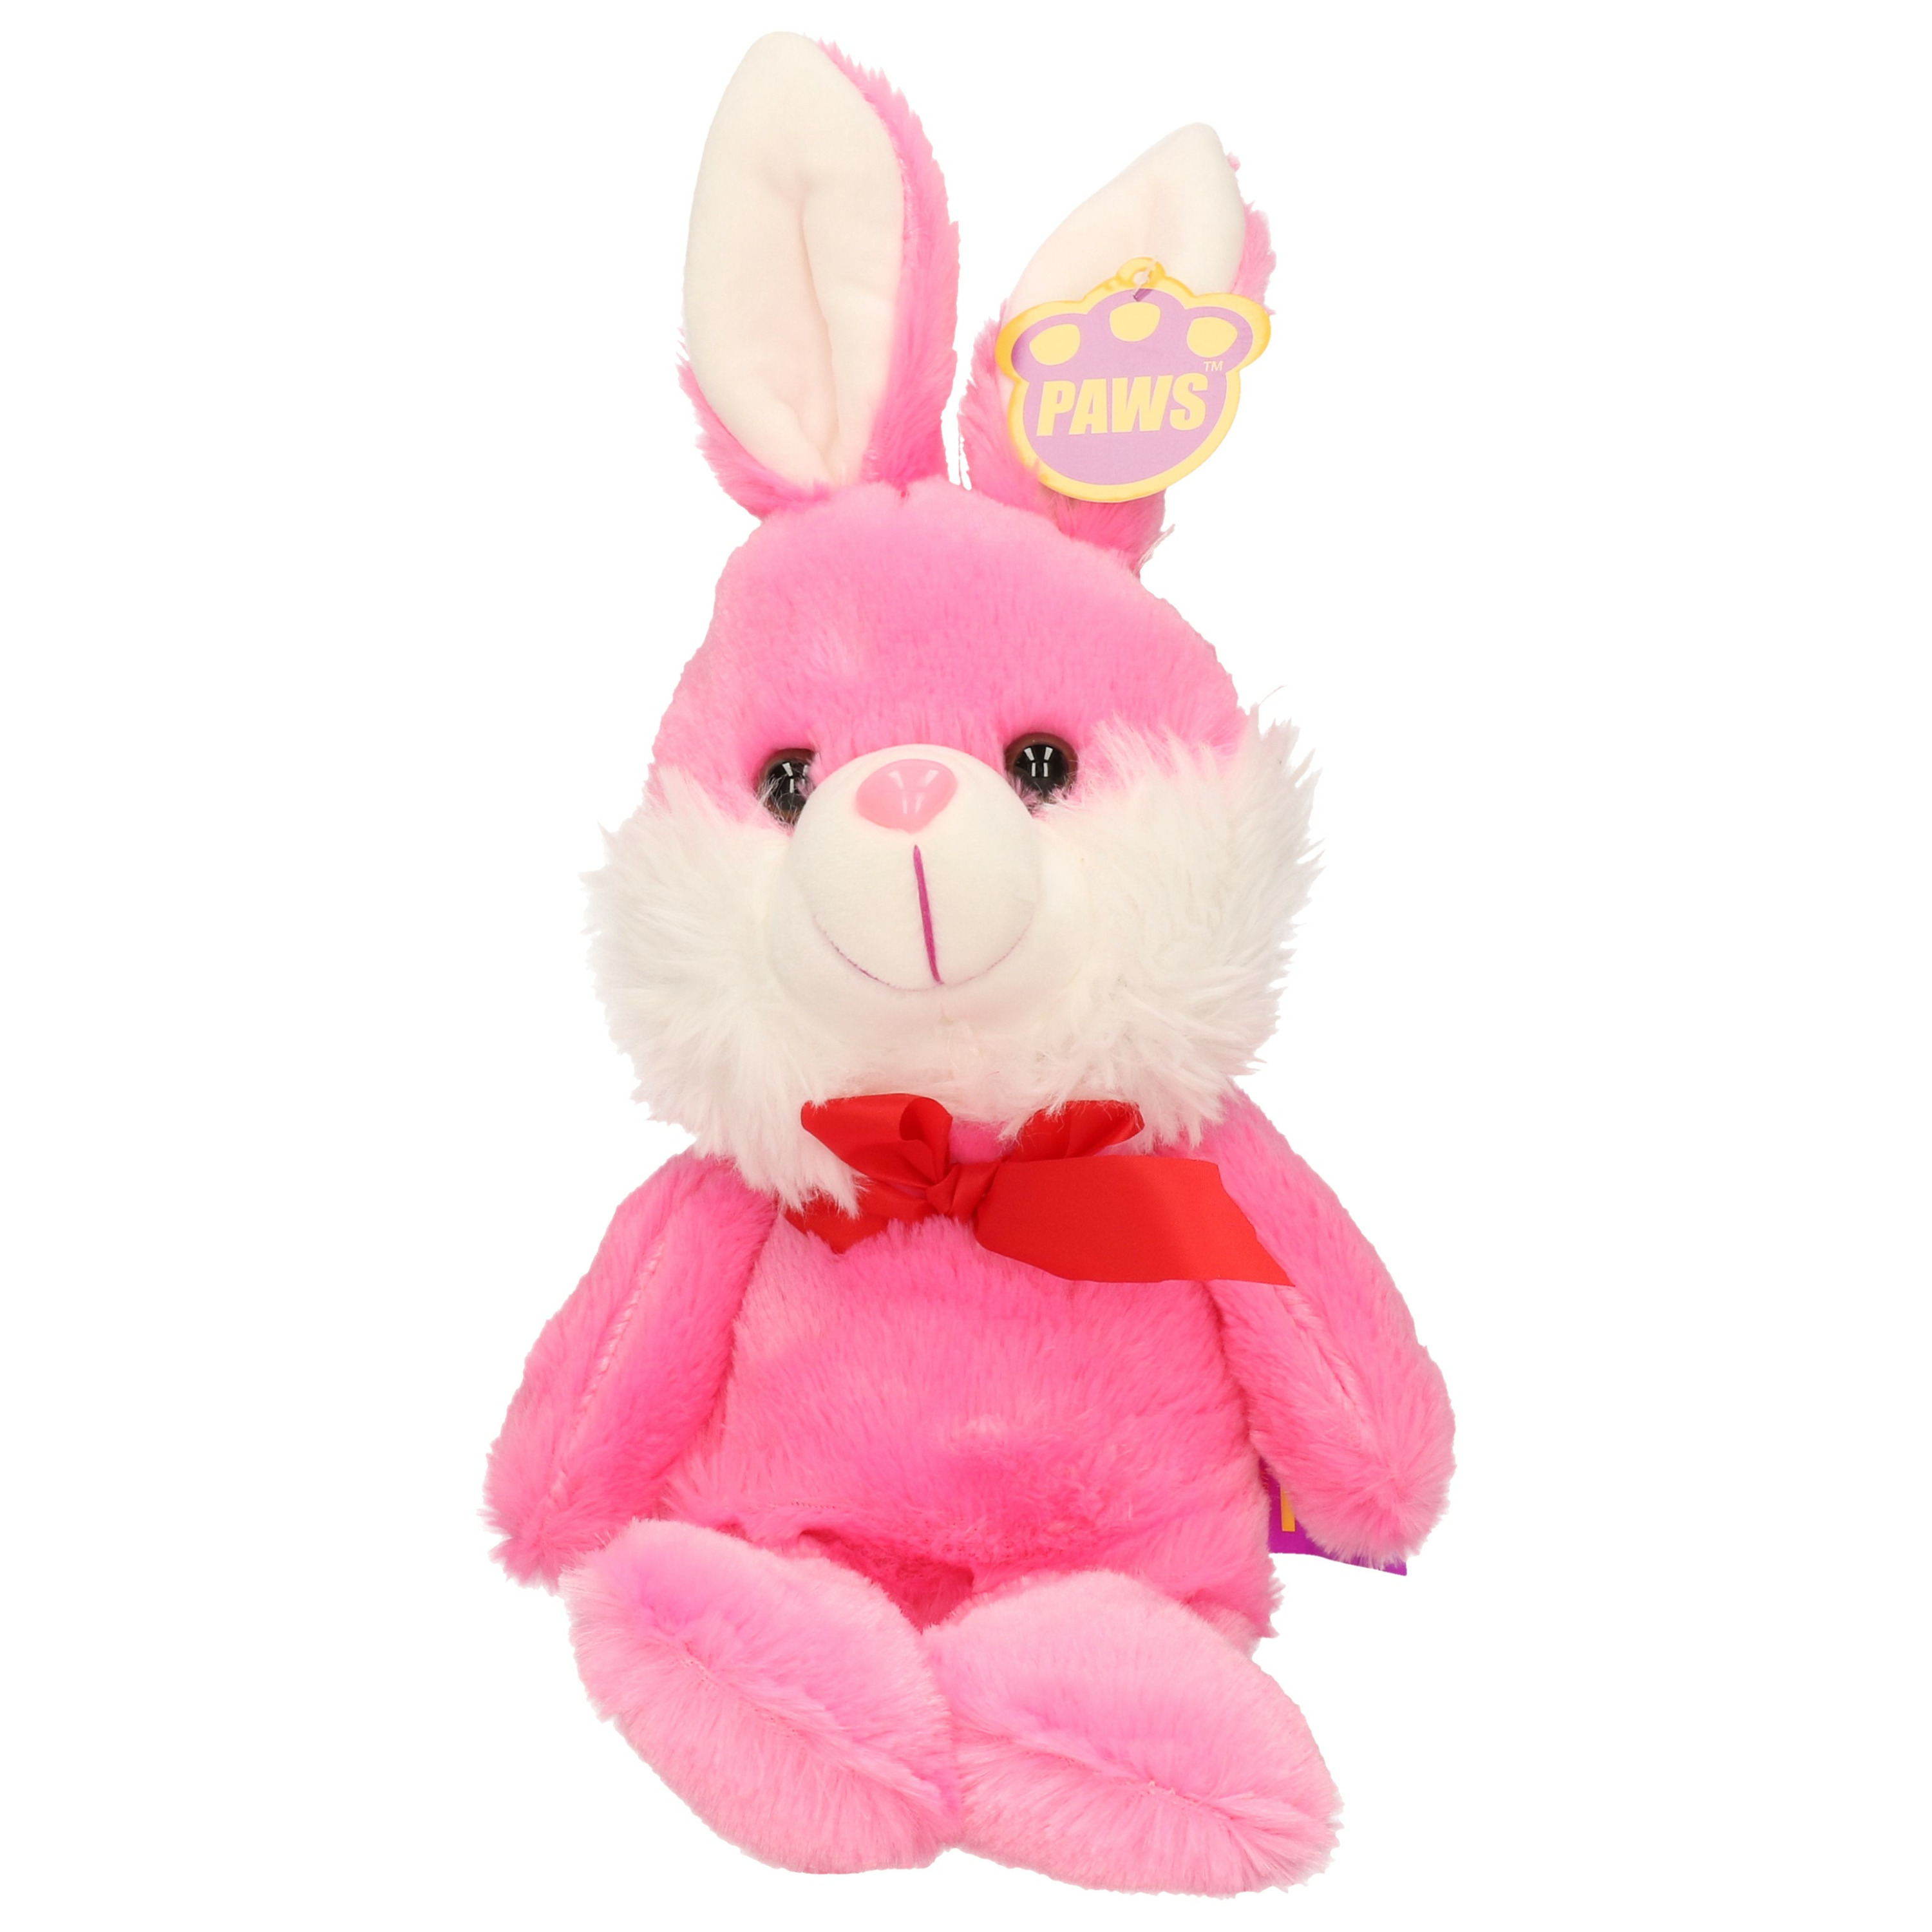 Paashaas-haas-konijn knuffel dier zachte pluche roze cadeau 32 cm met strikje